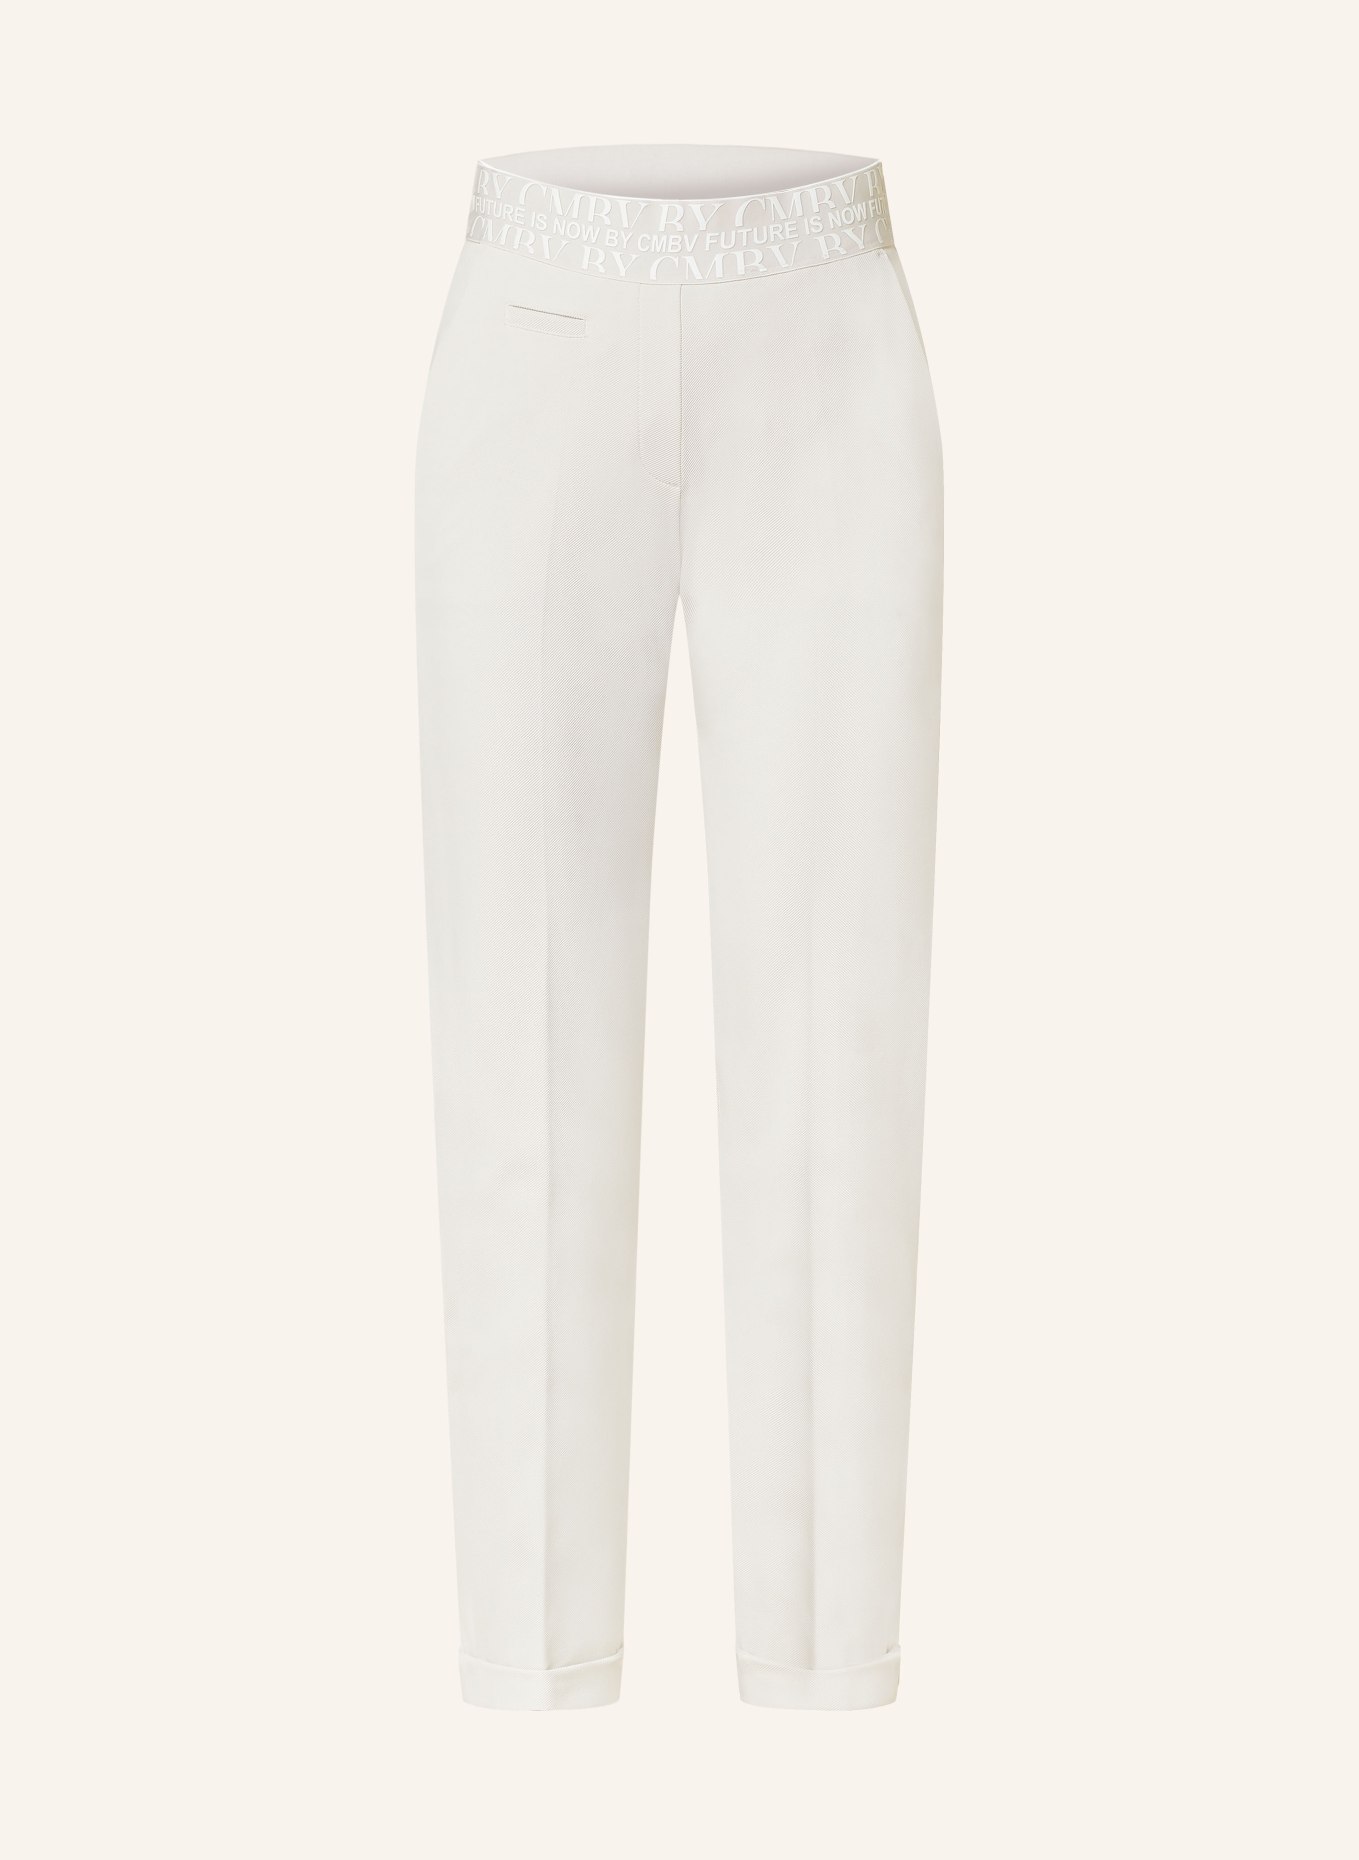 CAMBIO Trousers KIM, Color: WHITE (Image 1)